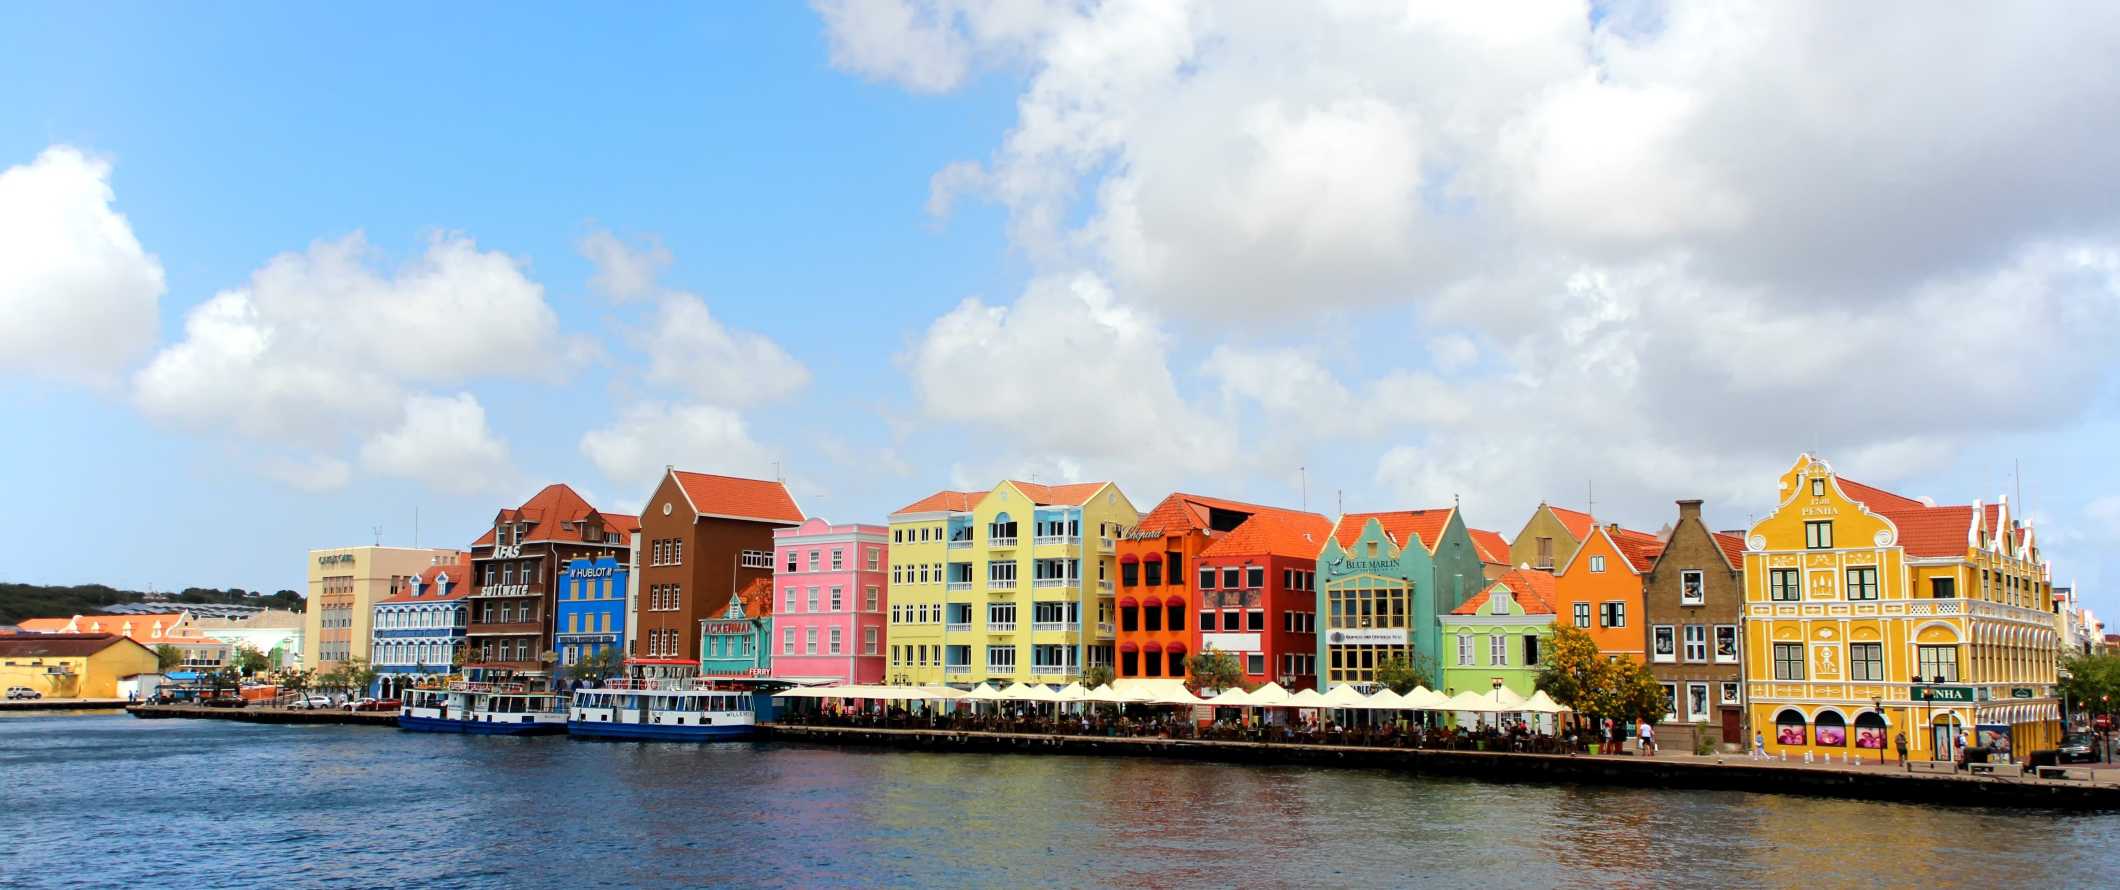 Casas pintadas com cores vivas e pessoas jantando no calçadão da ilha tropical de Curaçao, no Caribe